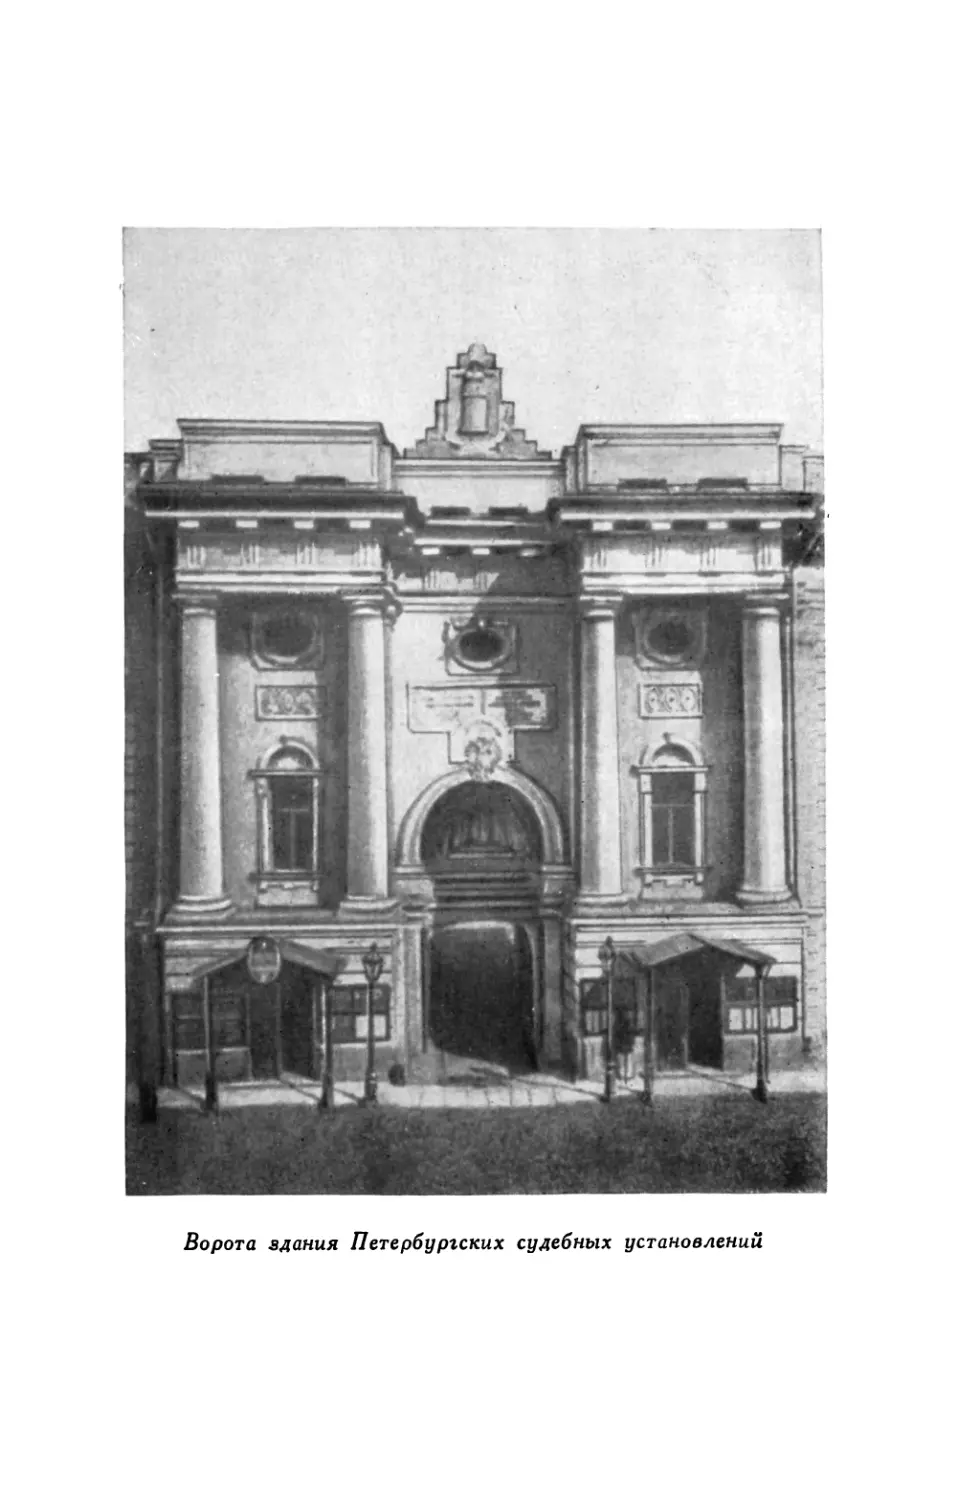 Вклейка. Ворота здания Петербургских судебных установлений